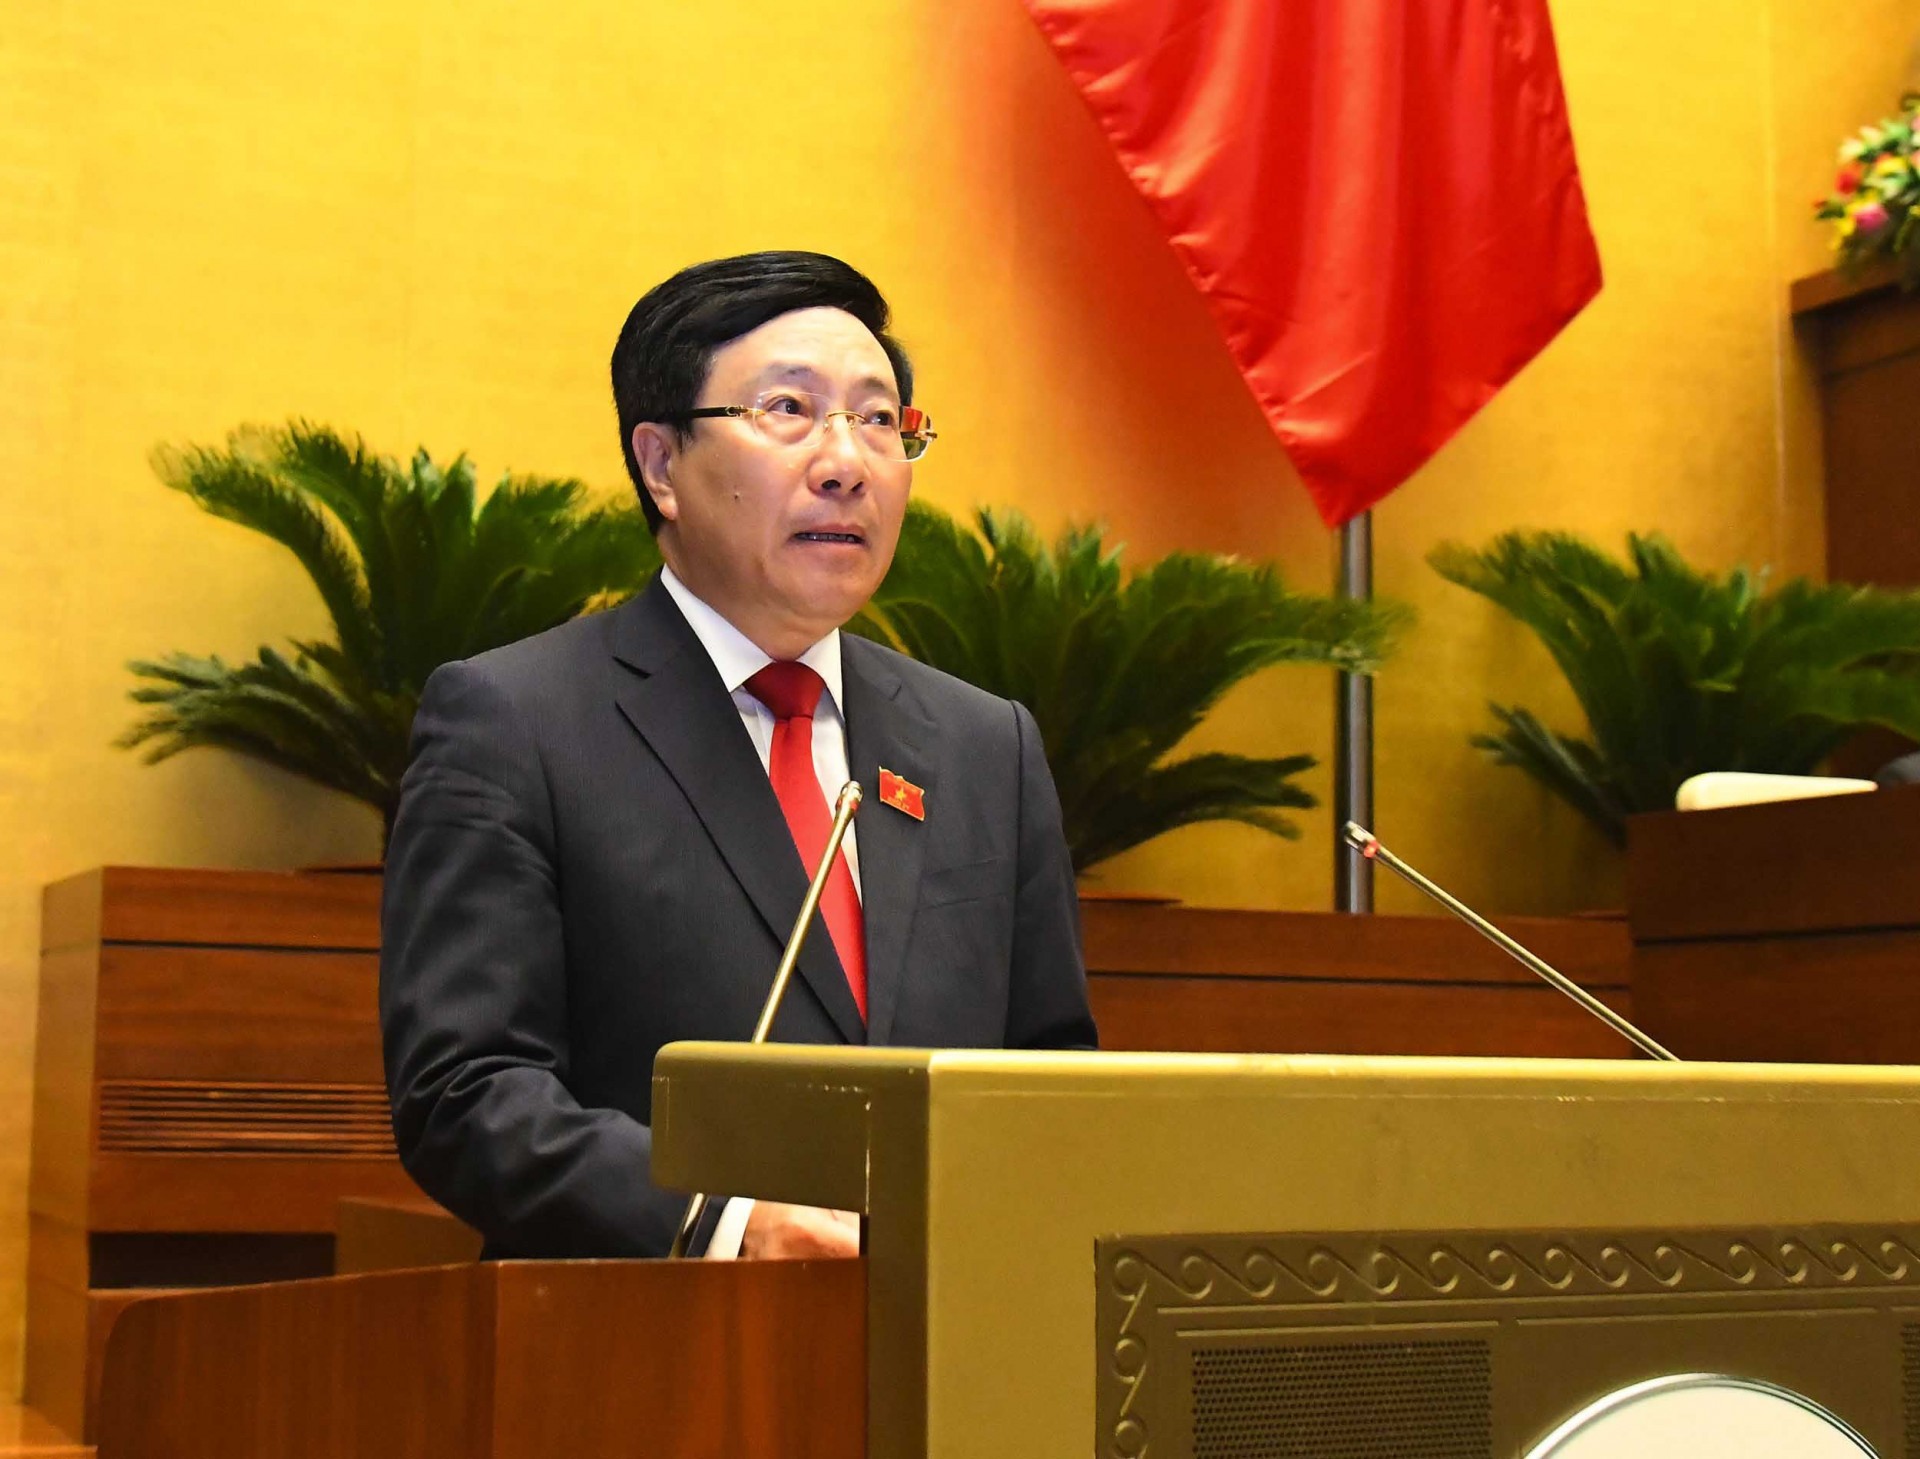 Phó Thủ tướng Phạm Bình Minh: Dù nhiều khó khăn, kinh tế-xã hội 6 tháng đầu năm giữ đà tăng trưởng